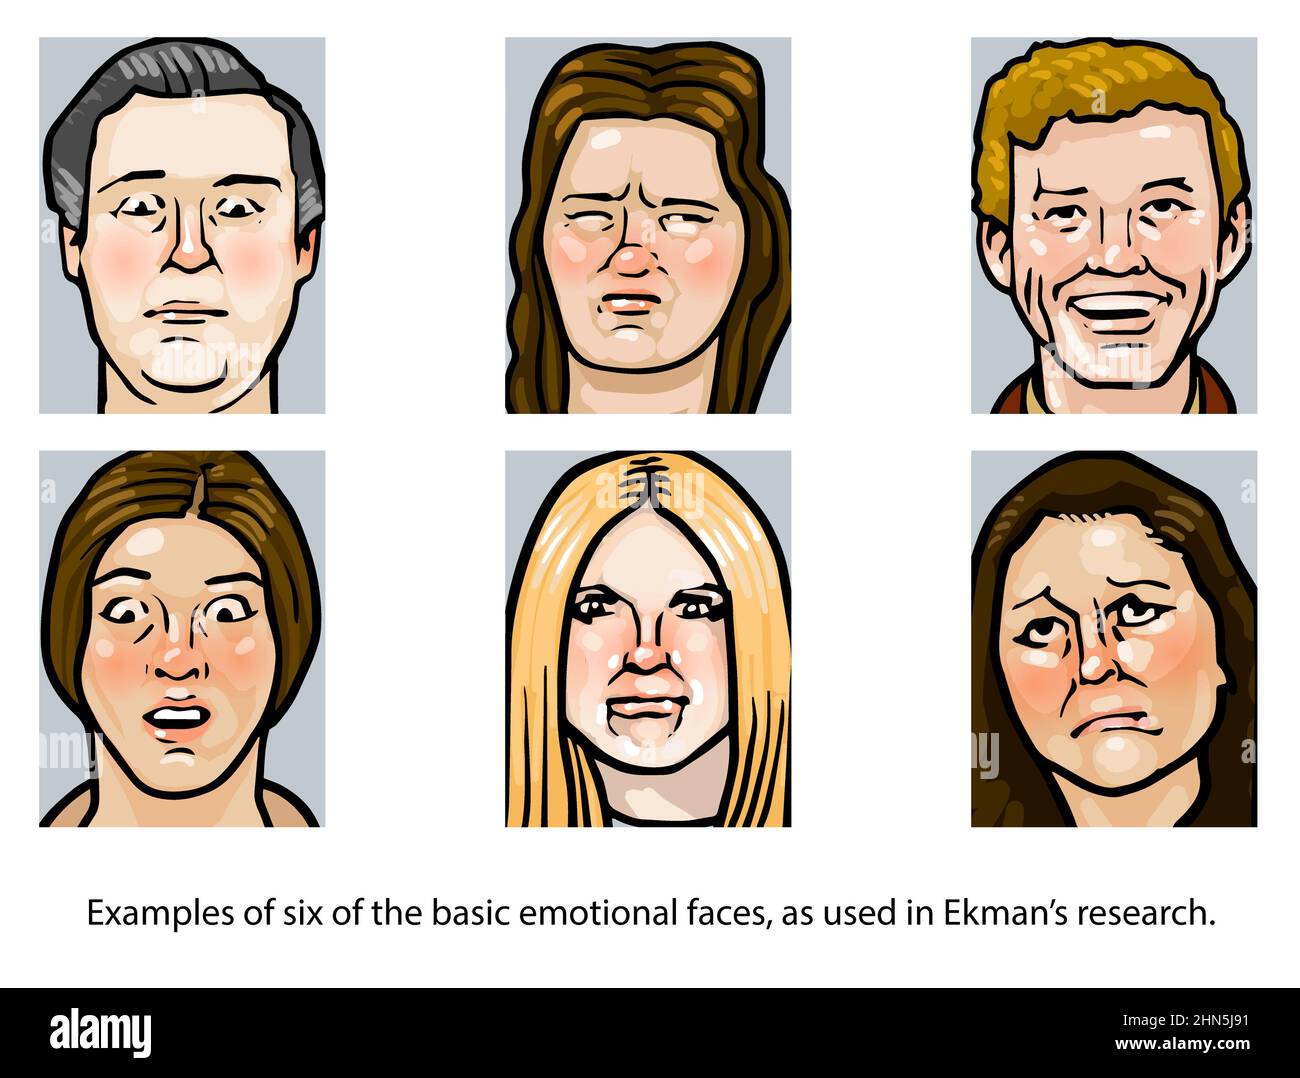 Recherche de Paul Ekman sur Smile (sourires faux/vrais) Illustration de l'étude psychologique - réaliste, pas sur le thème de la bande dessinée célèbre spectacle psychologique Banque D'Images